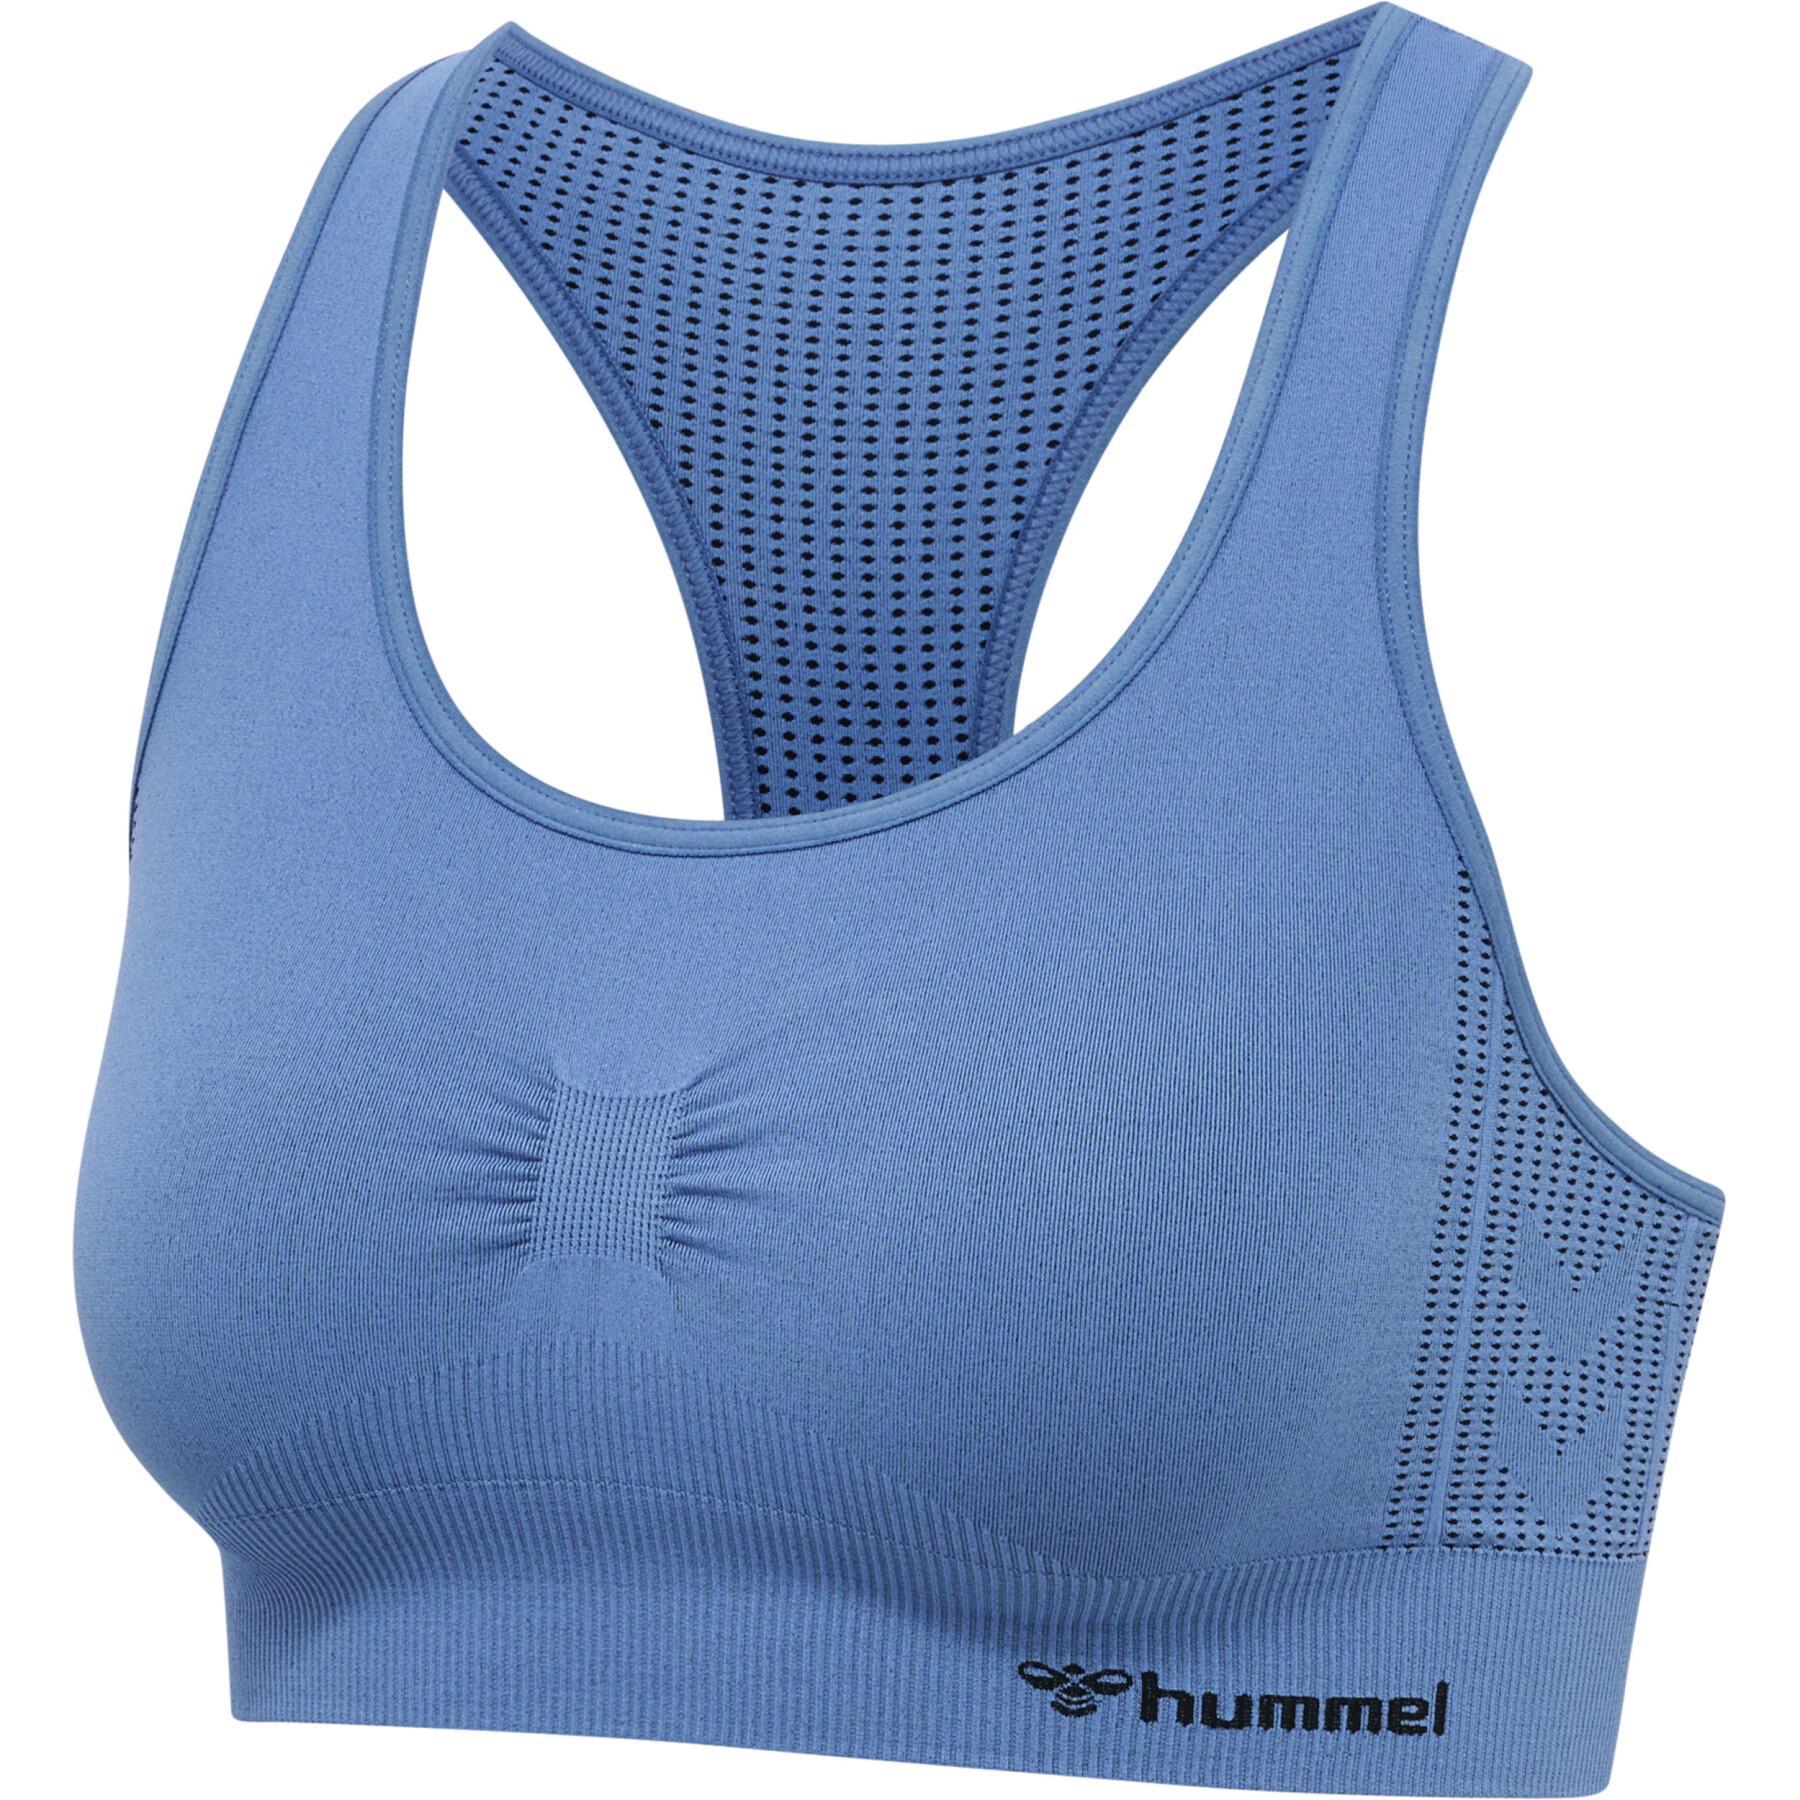 Seamless sports bra for women Hummel Shaping - Hummel - Brands